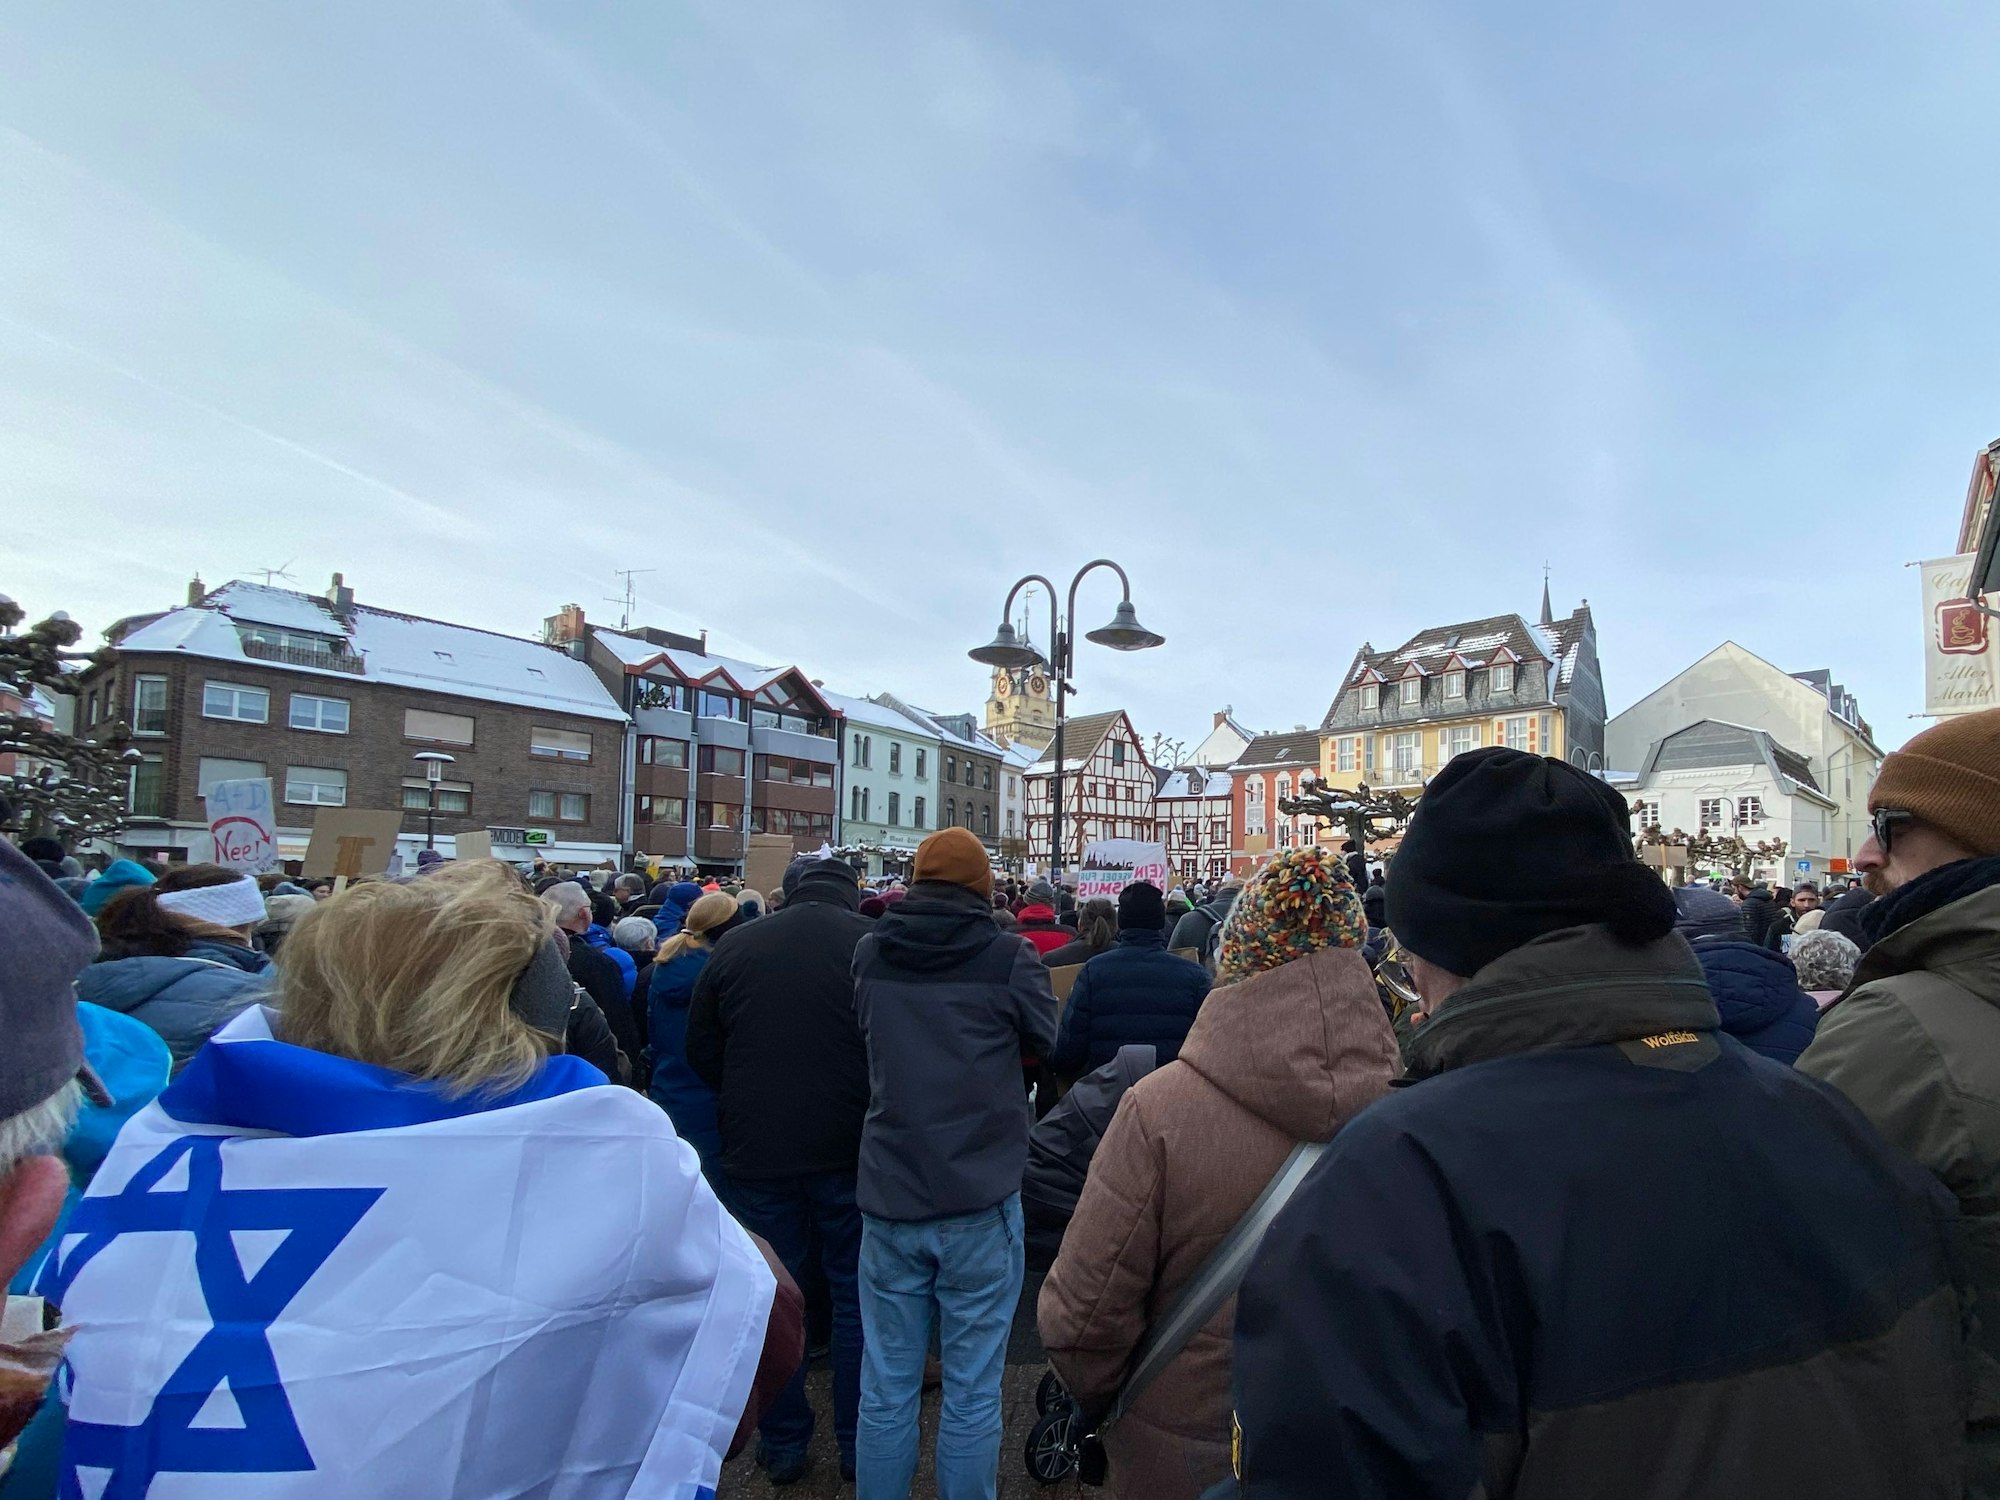 Menschen lauschen einer Kundgebung. Eine Frau trägt eine Israelflagge als Umhang.